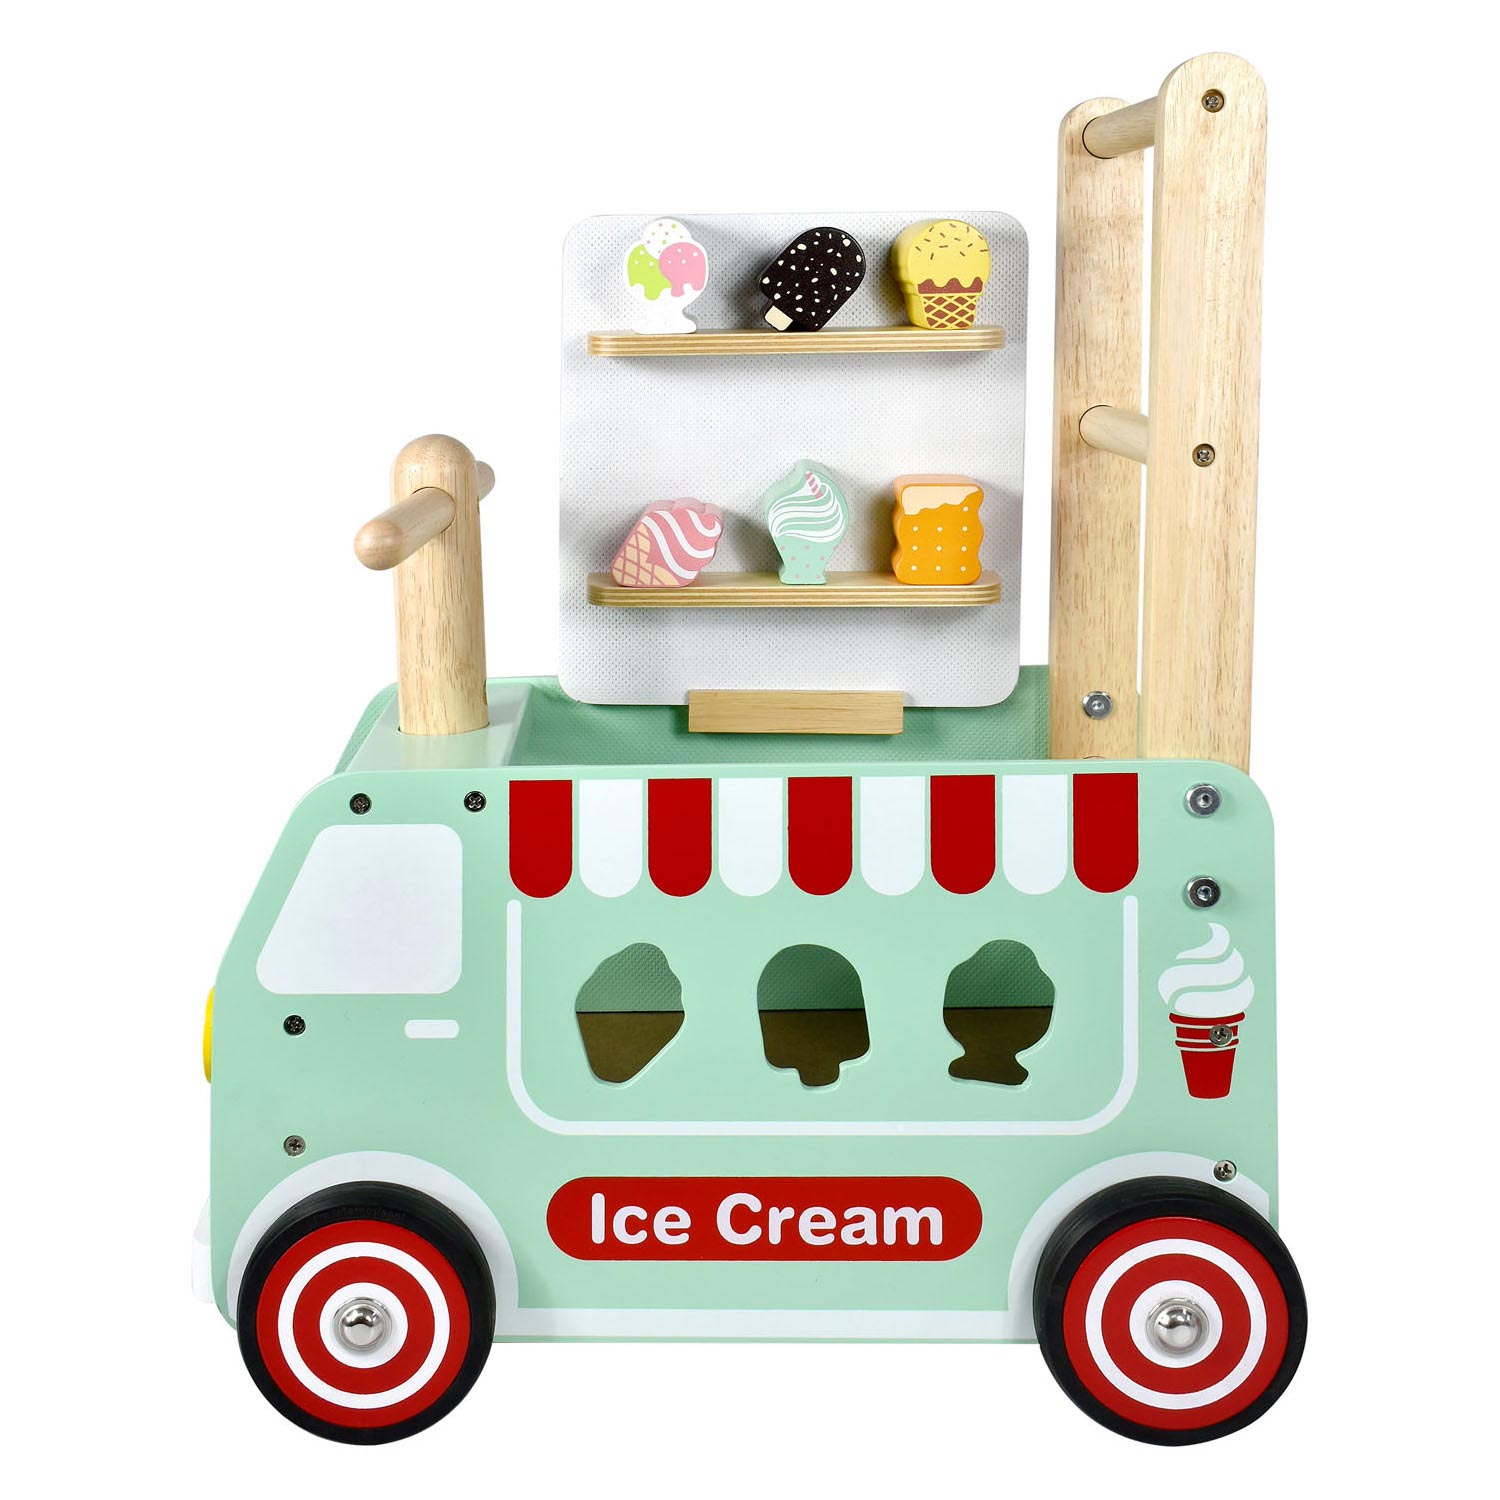 Je suis un jouet qui marche et pousse le chariot à crème glacée